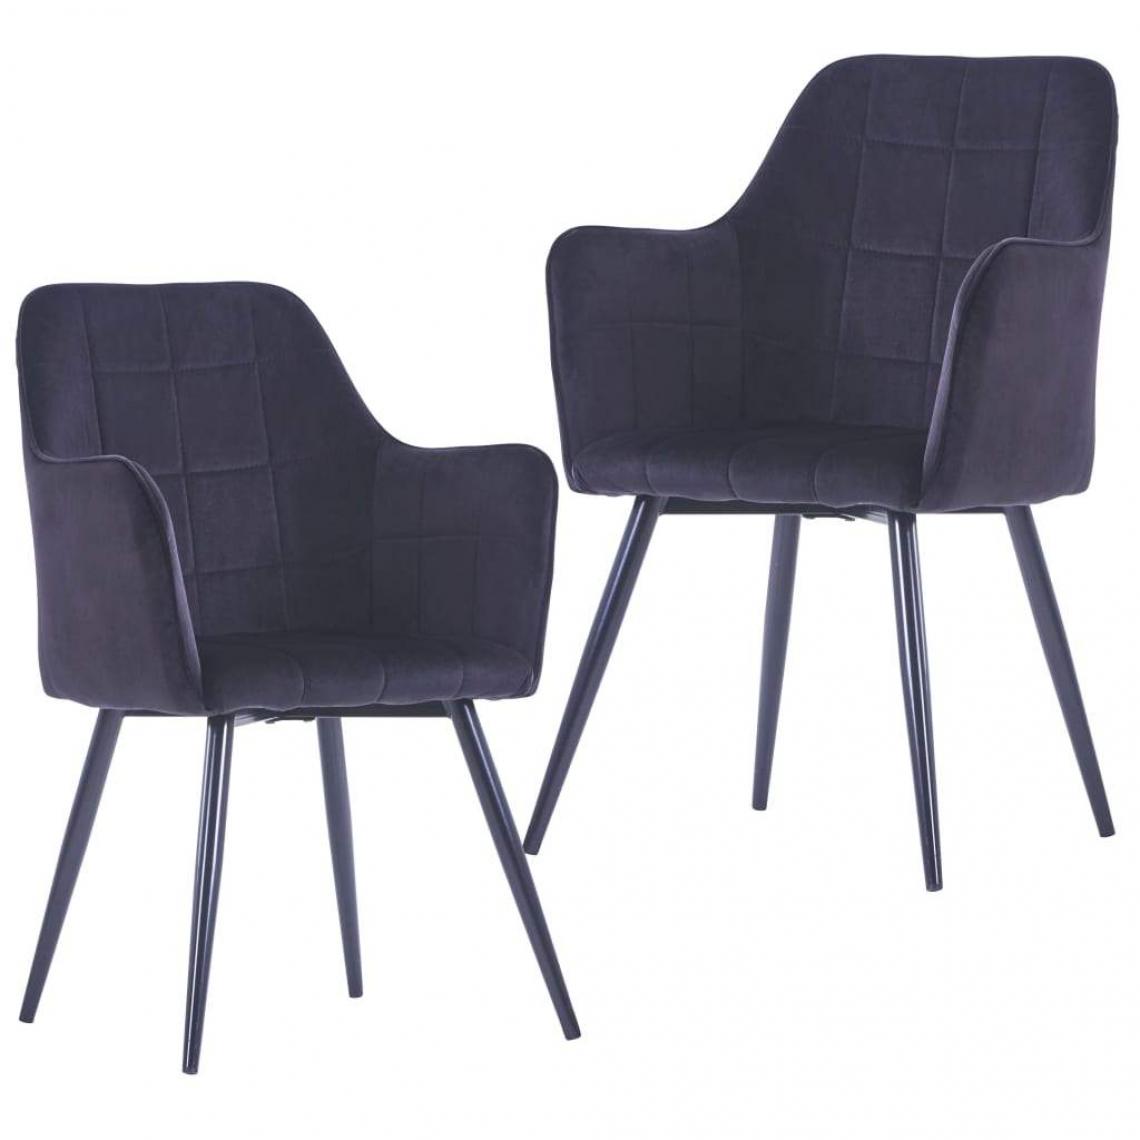 Decoshop26 - Lot de 2 chaises de salle à manger cuisine design moderne velours noir CDS020891 - Chaises